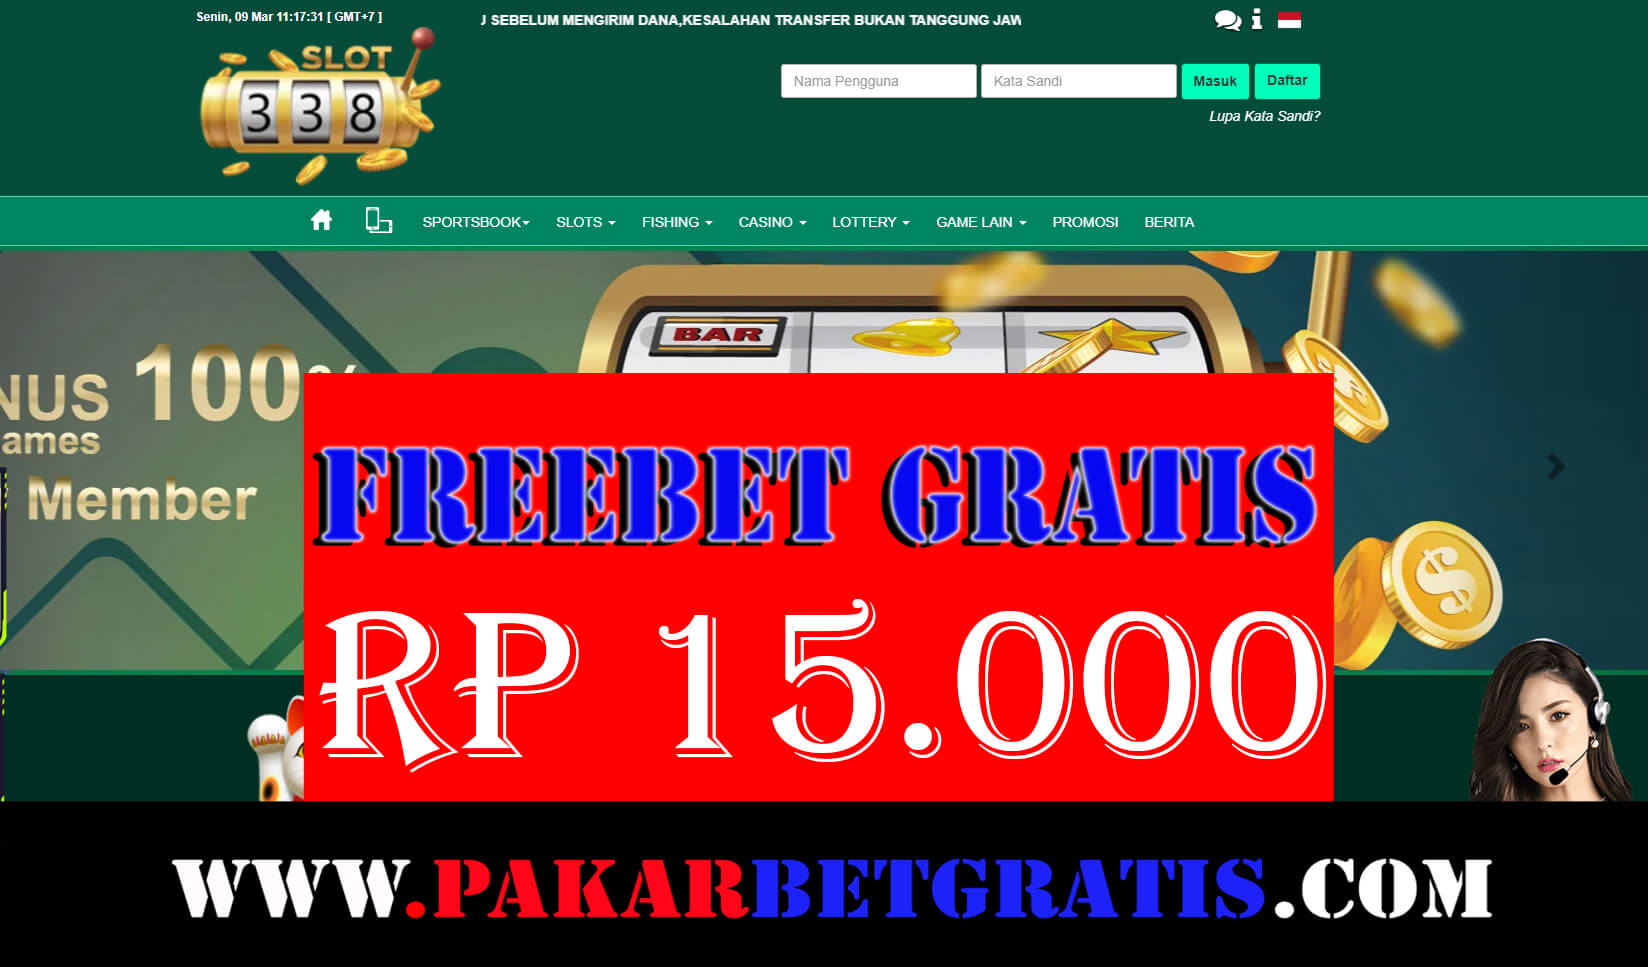 338slot Freebet Gratis Rp 15.000 Tanpa Deposit